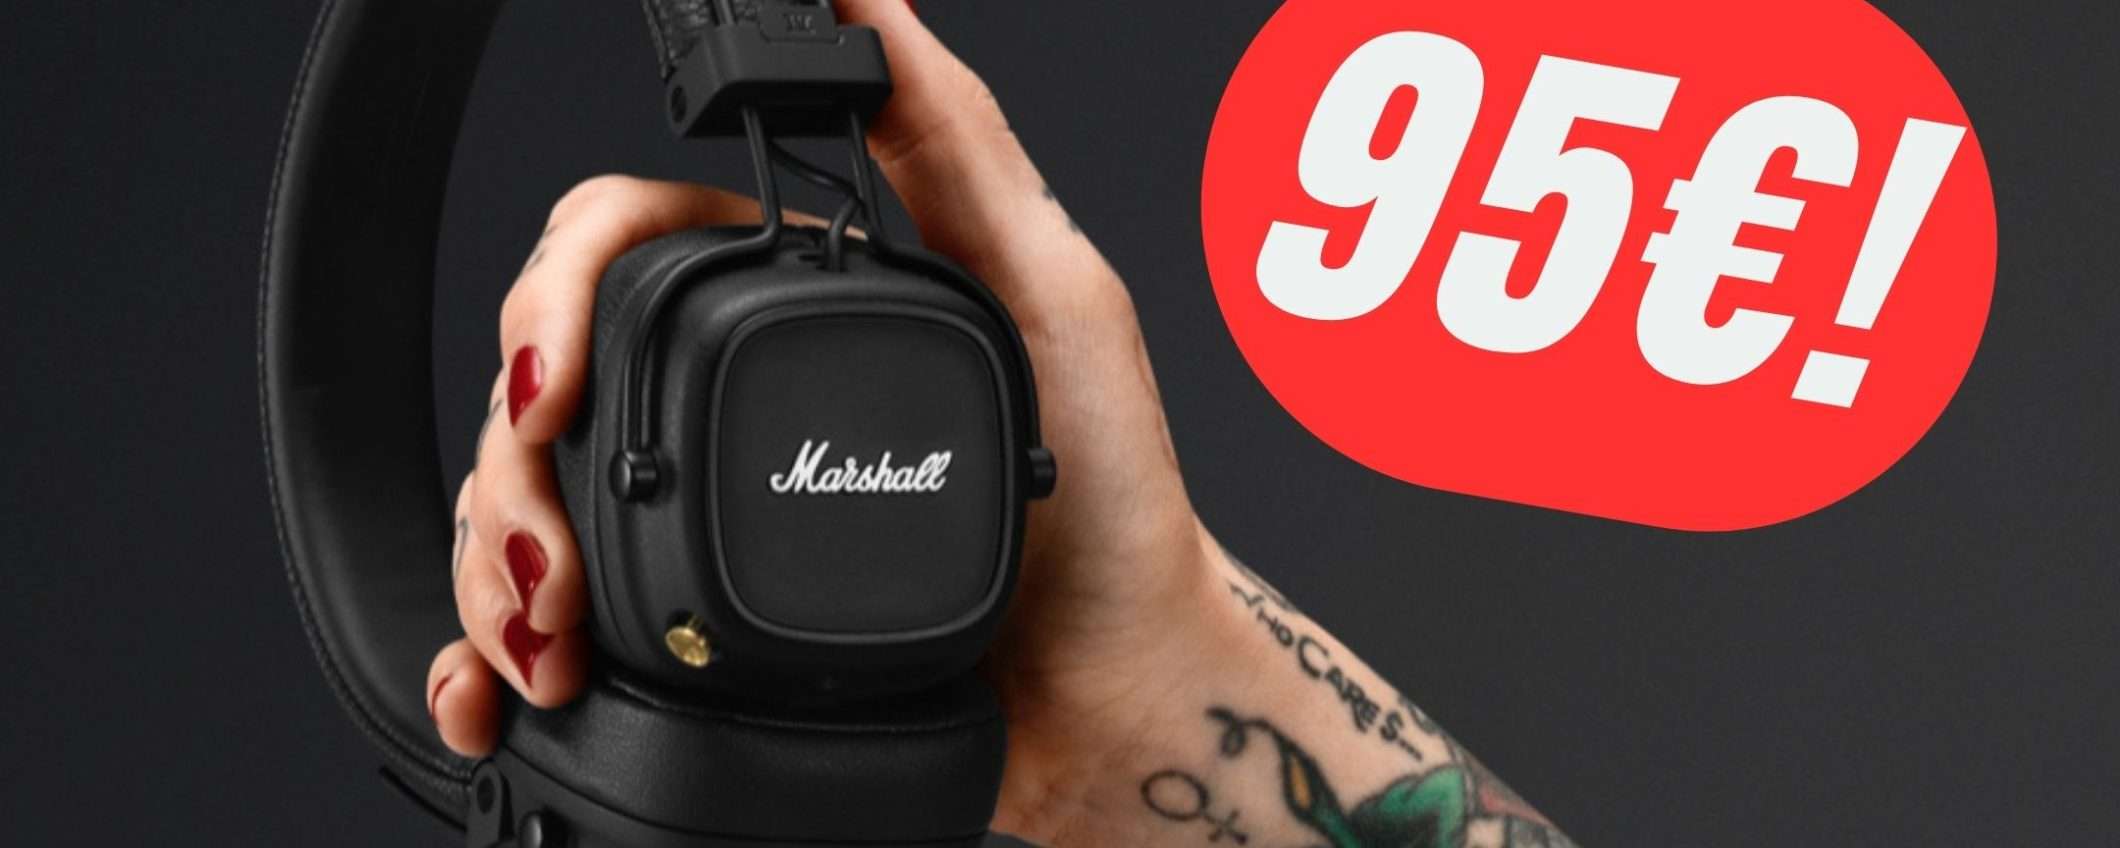 Risparmia più di 53€ sulle iconiche Cuffie Wireless Marshall!